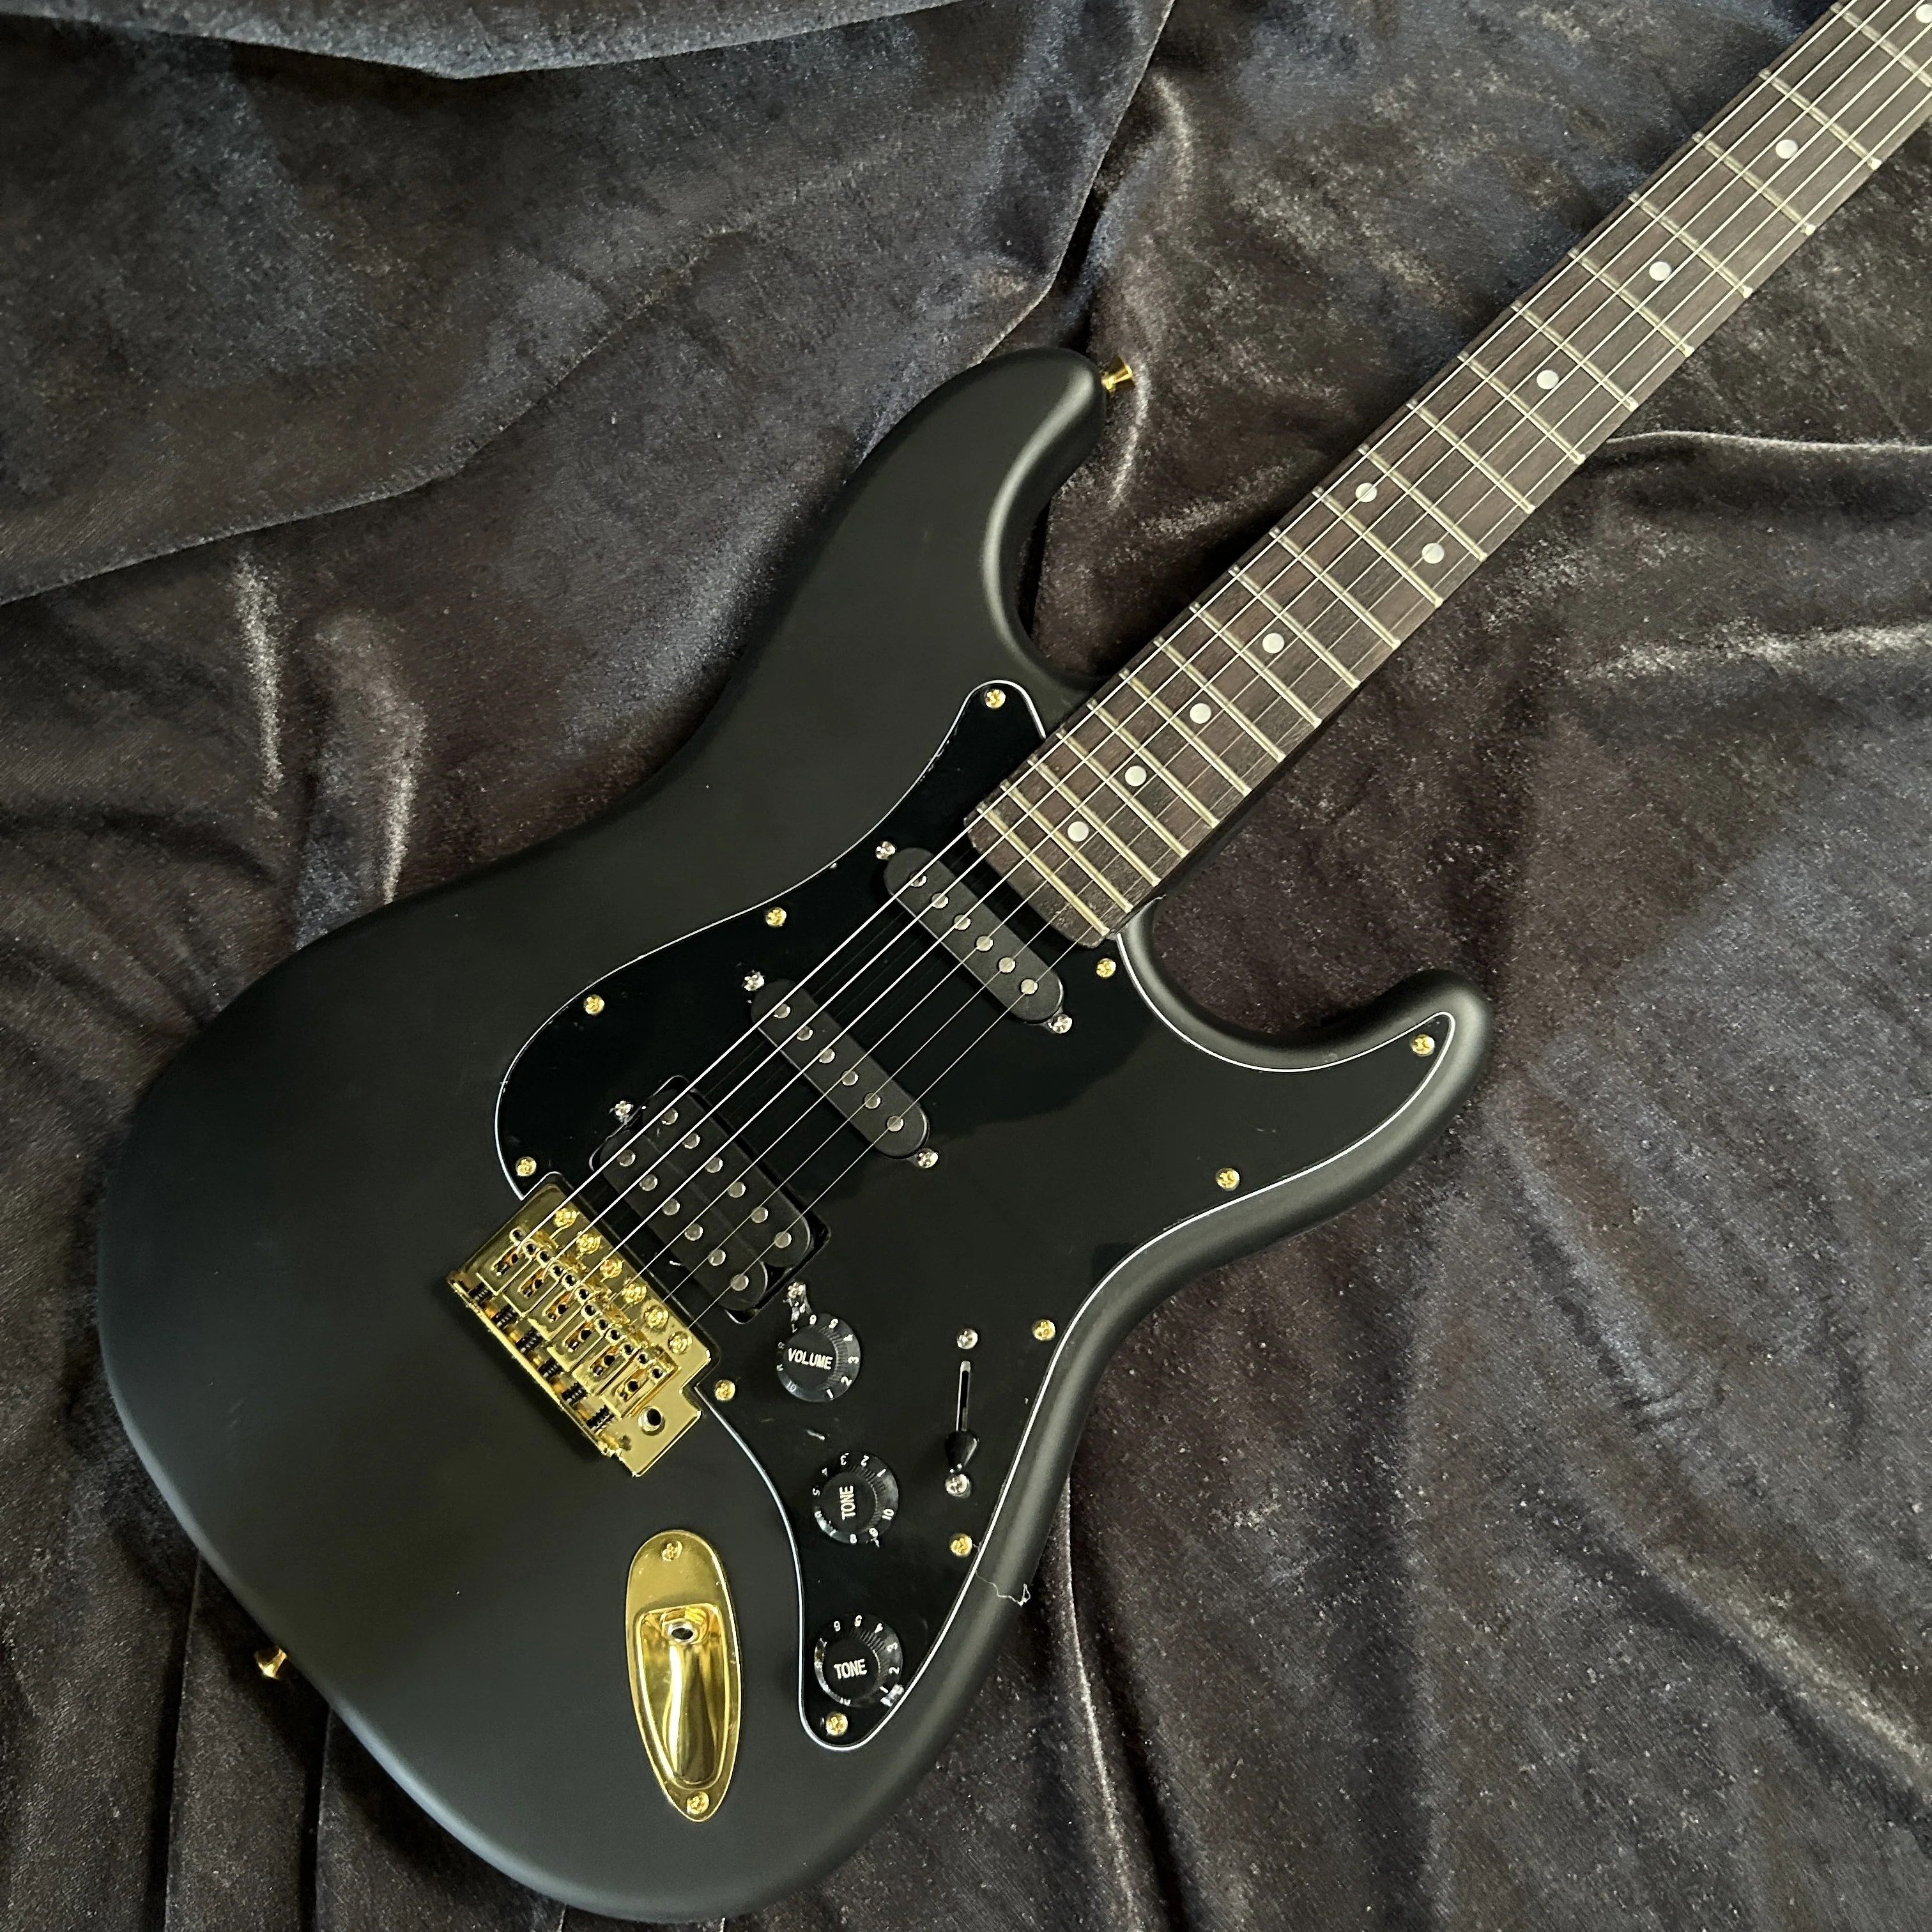 

Электрическая гитара ST, корпус из красного дерева, черный цвет, фингерборд из палисандра, матовая отделка, 6-струнная гитара, скрипация, гитара, Bluetooth